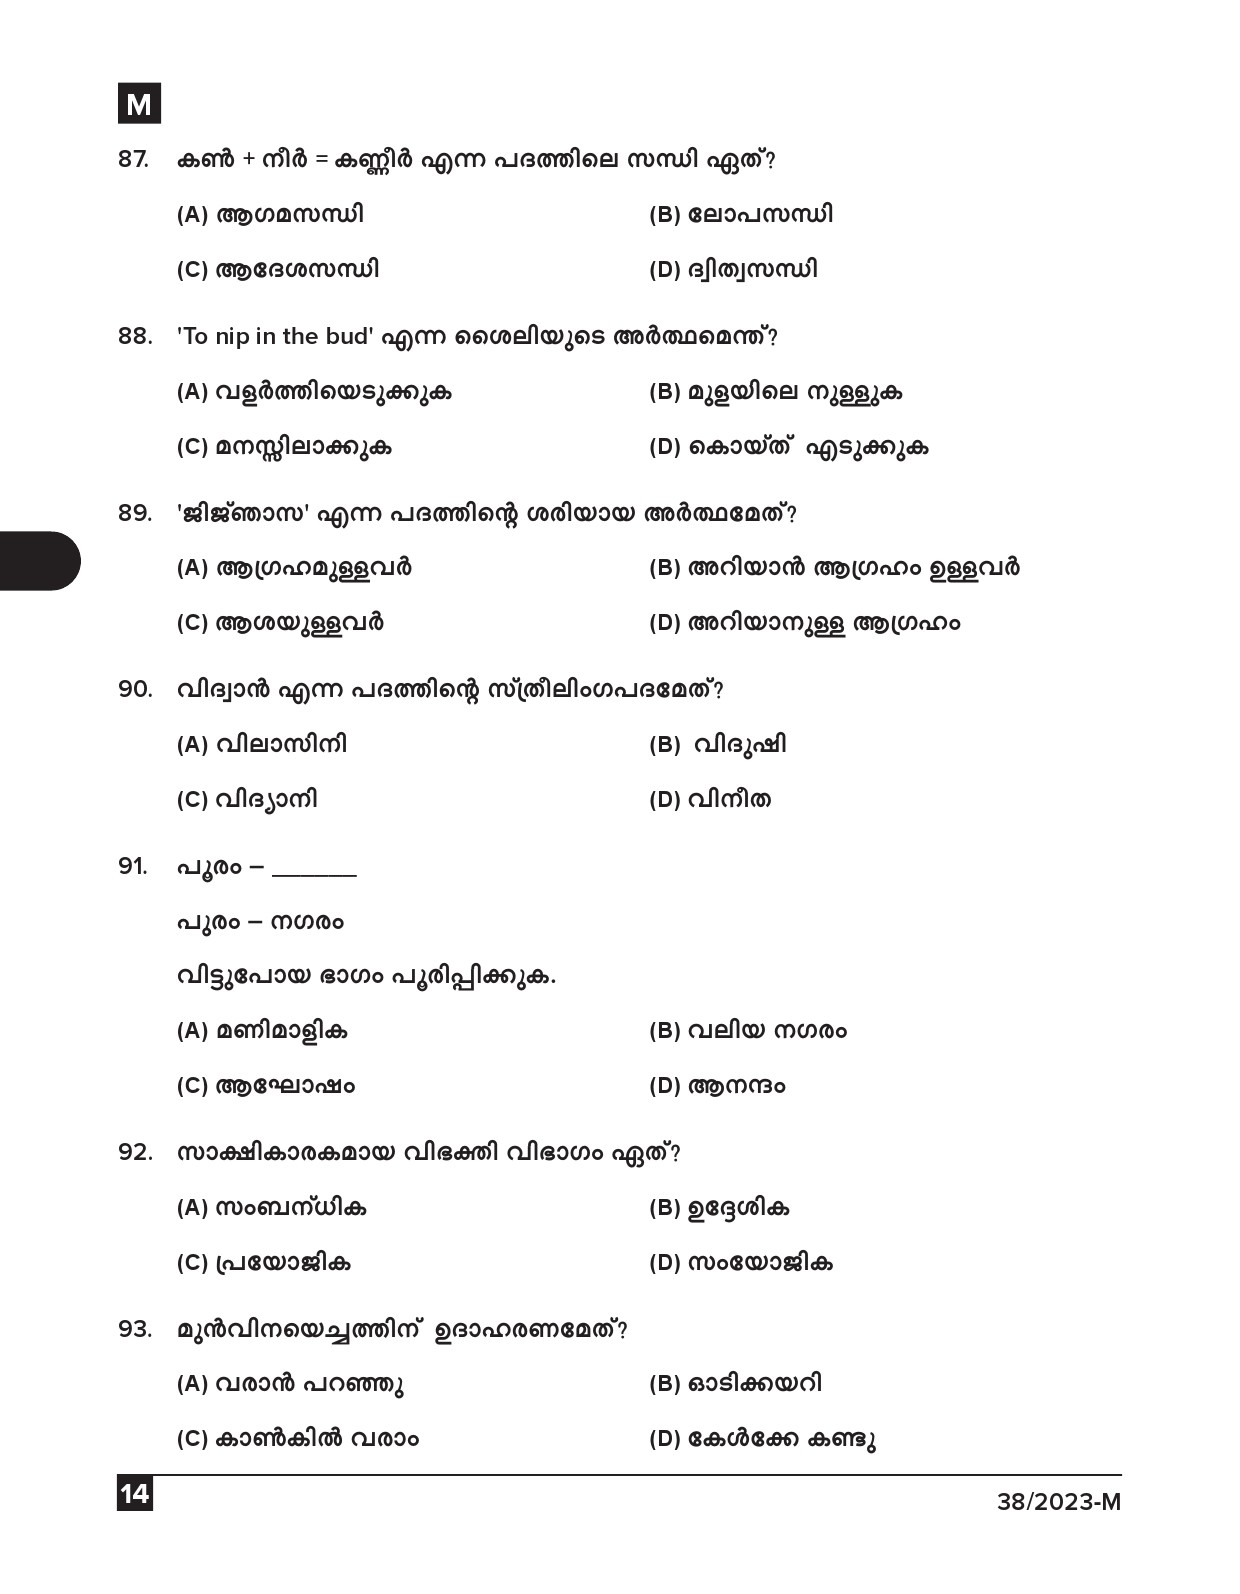 KPSC Junior Typist Malayalam Exam 2023 Code 0382023 M 13